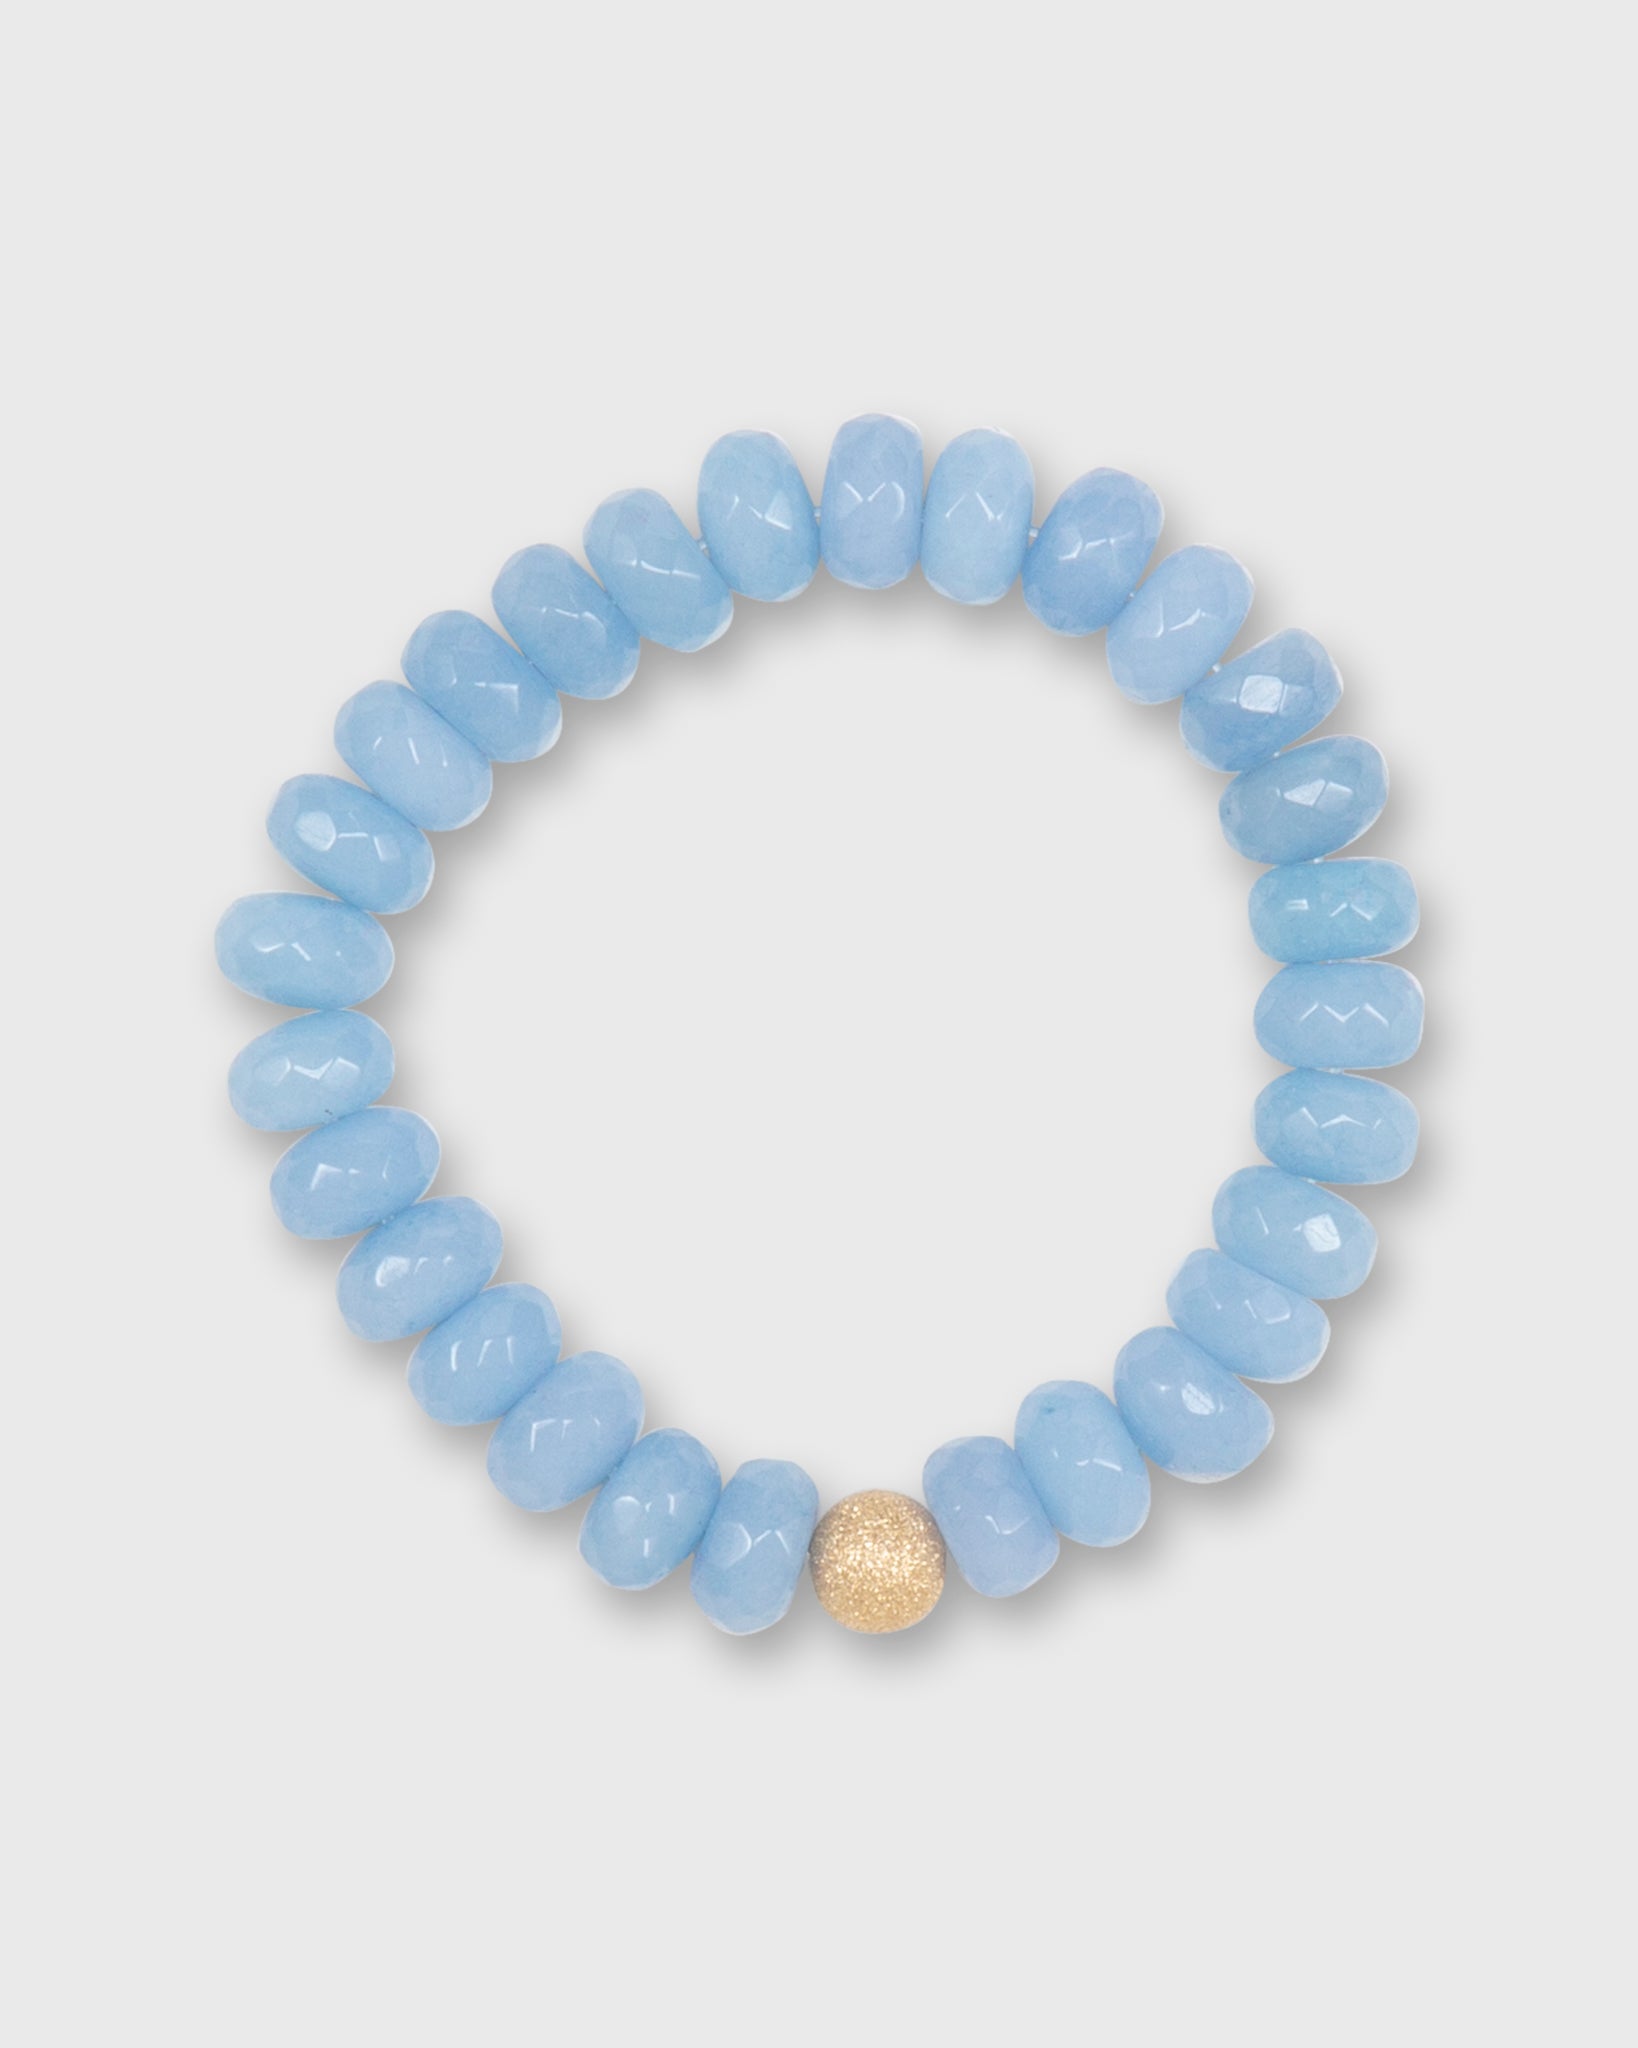 Monochrome Beaded Bracelet in Baby Blue